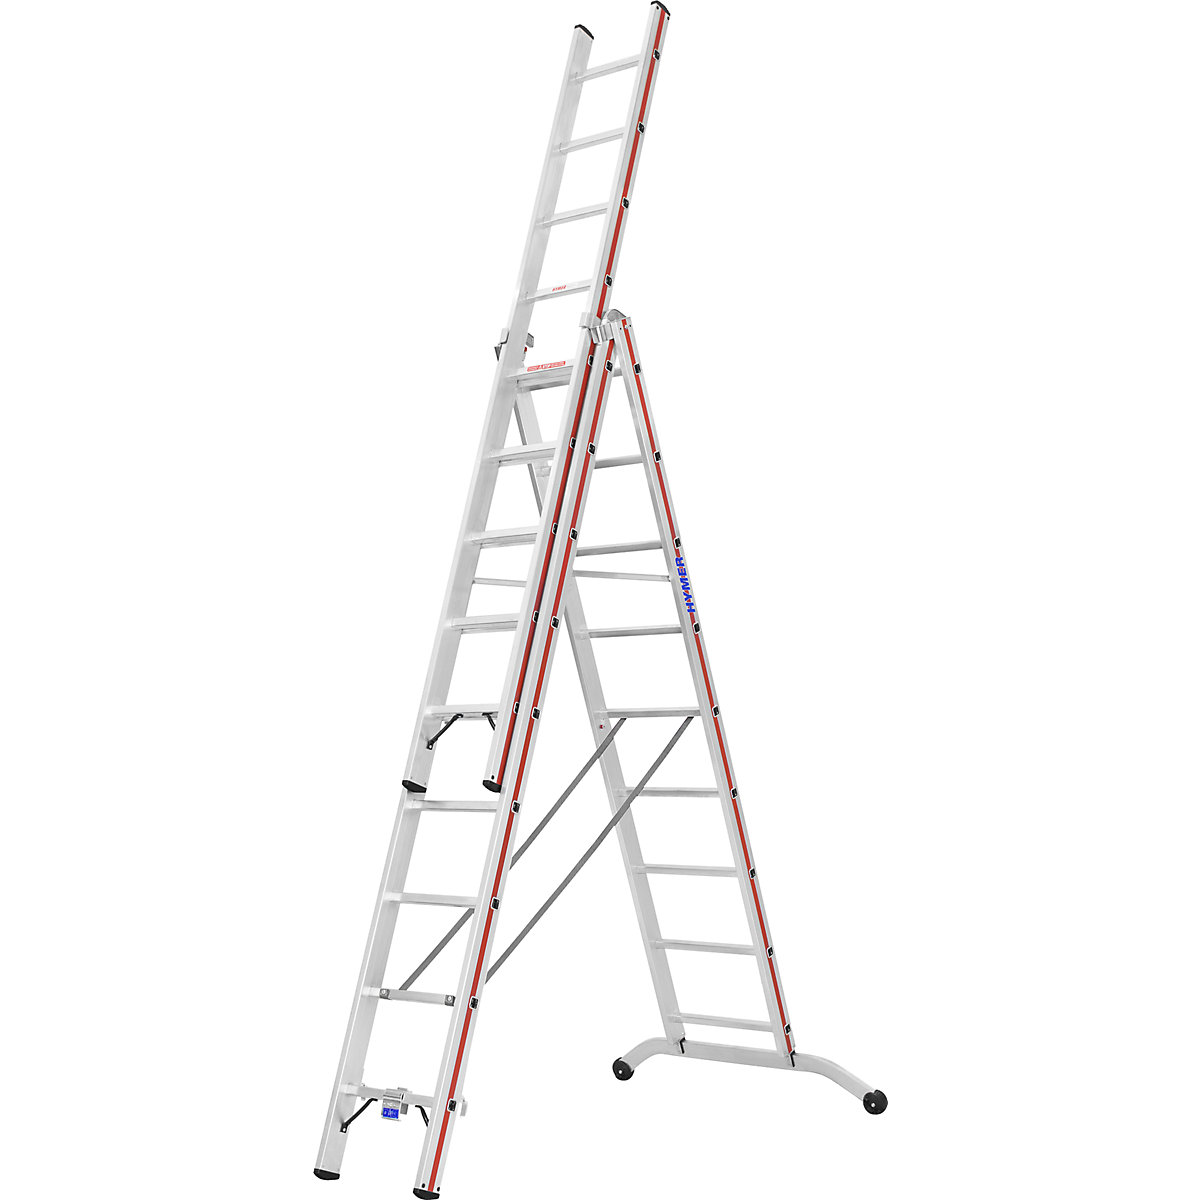 Escalera multiusos de aluminio – HYMER, modelo industrial, 3 x 9 peldaños, altura máx. de trabajo 7,45 m-9